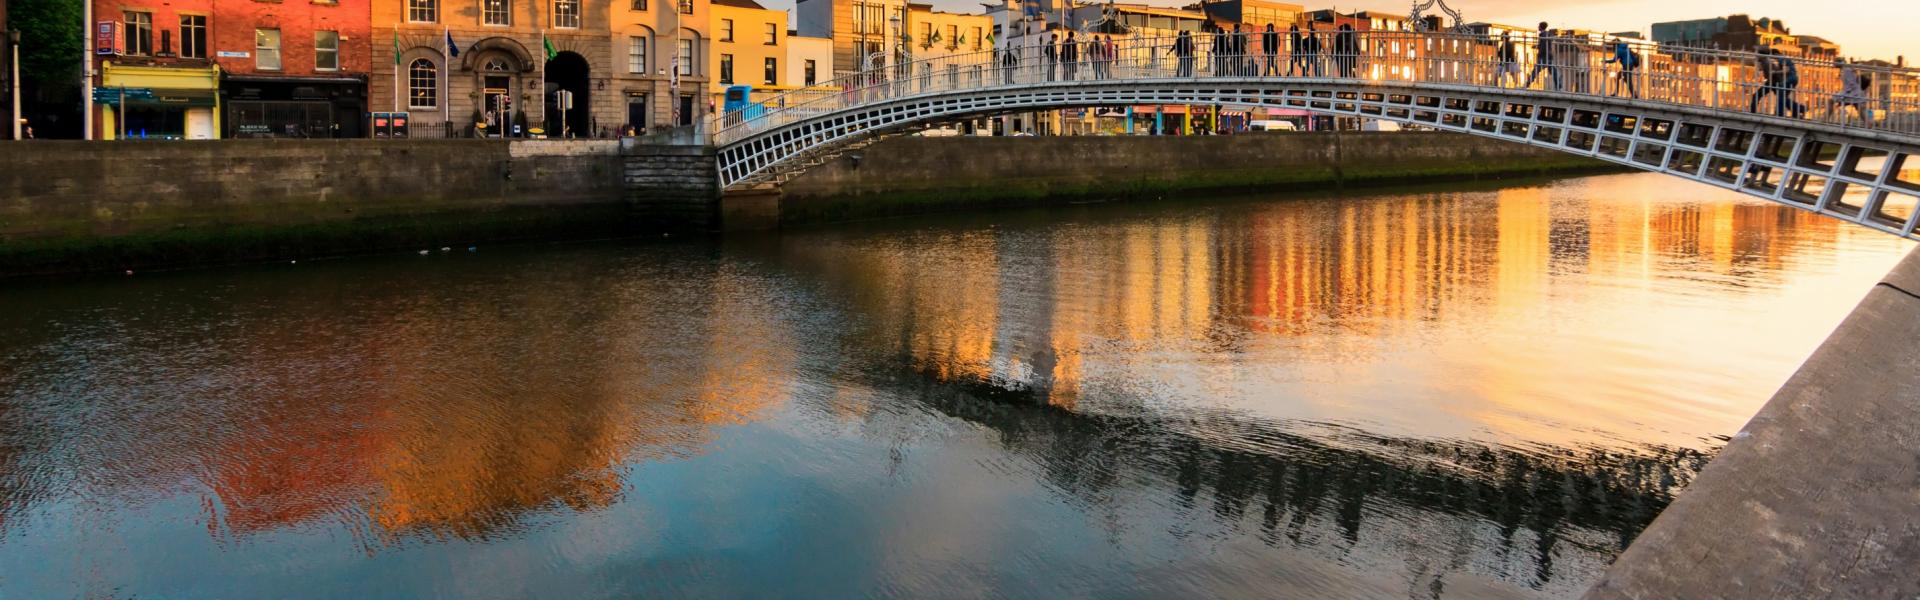 Noclegi i apartamenty wakacyjne w Dublinie - Casamundo